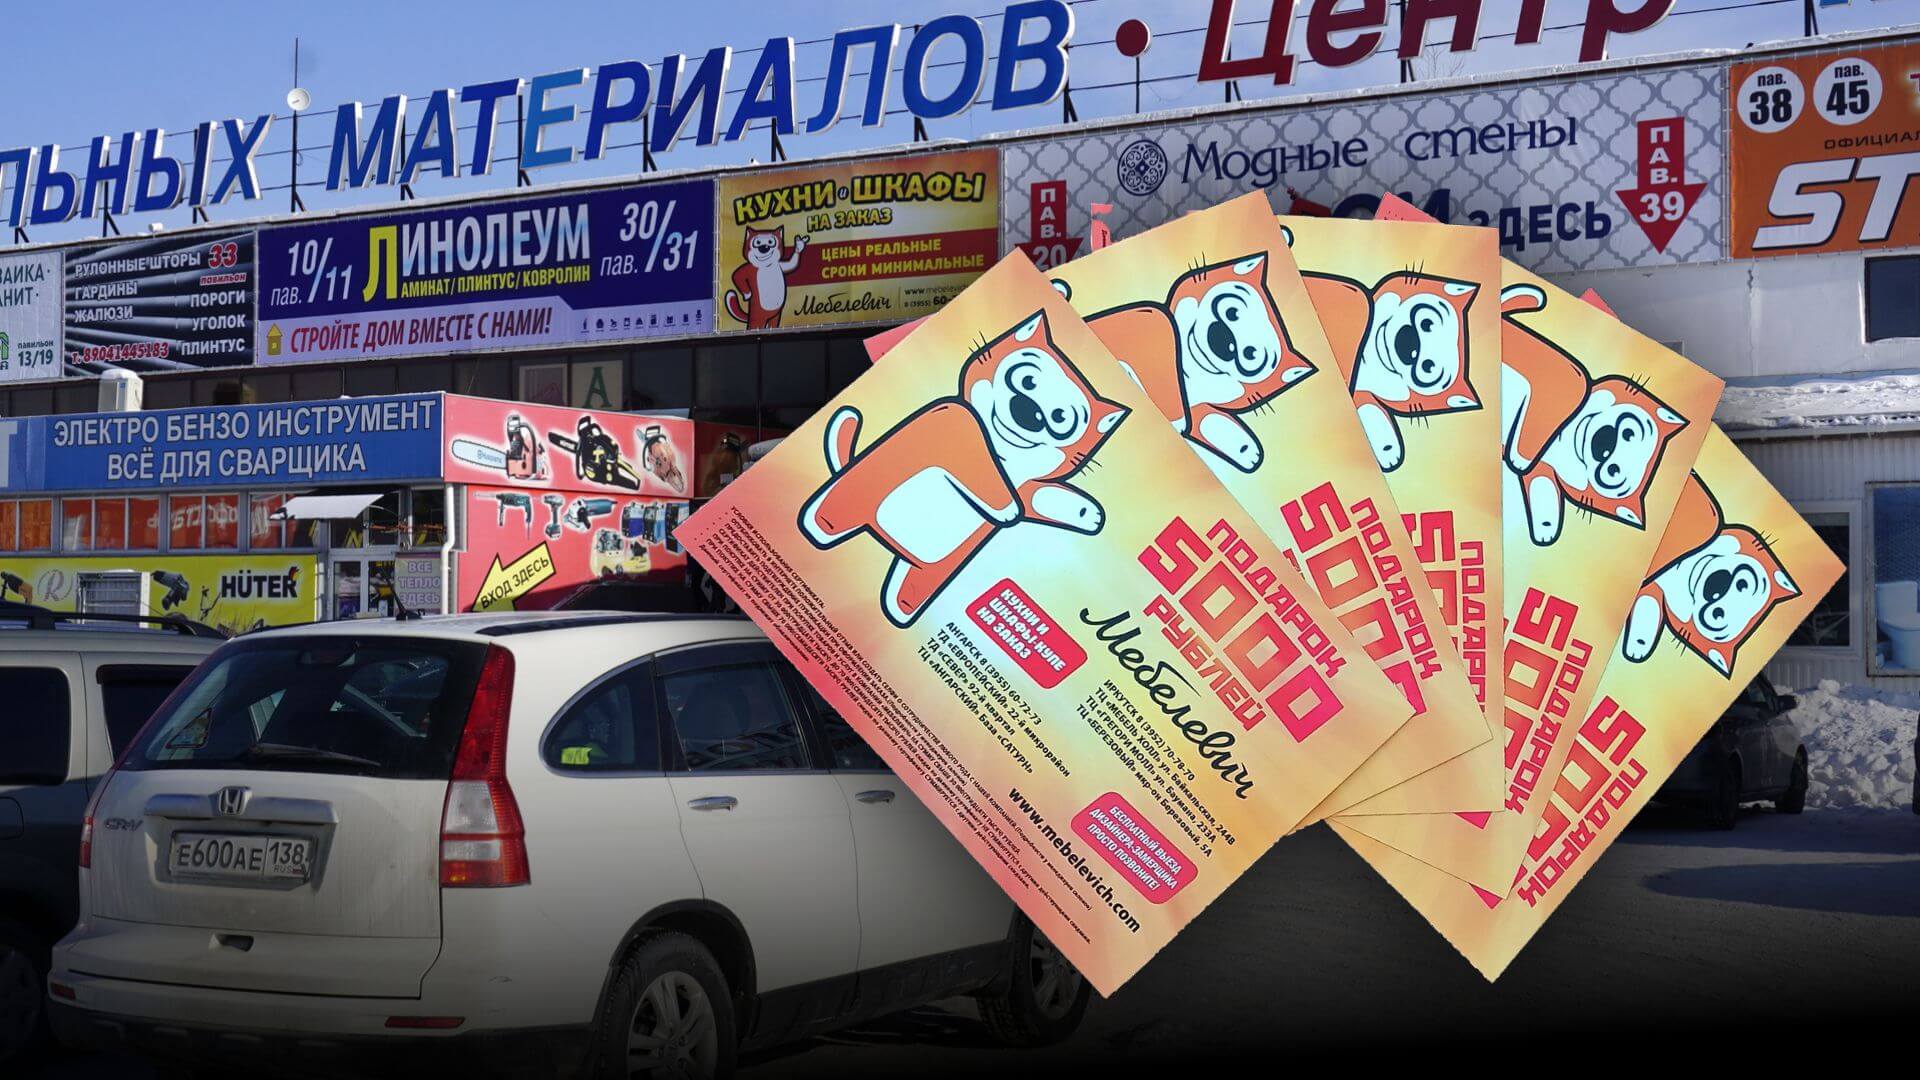 Подарочный сертификат спонсора розыгрыша «Мебелевич» на 5000 рублей